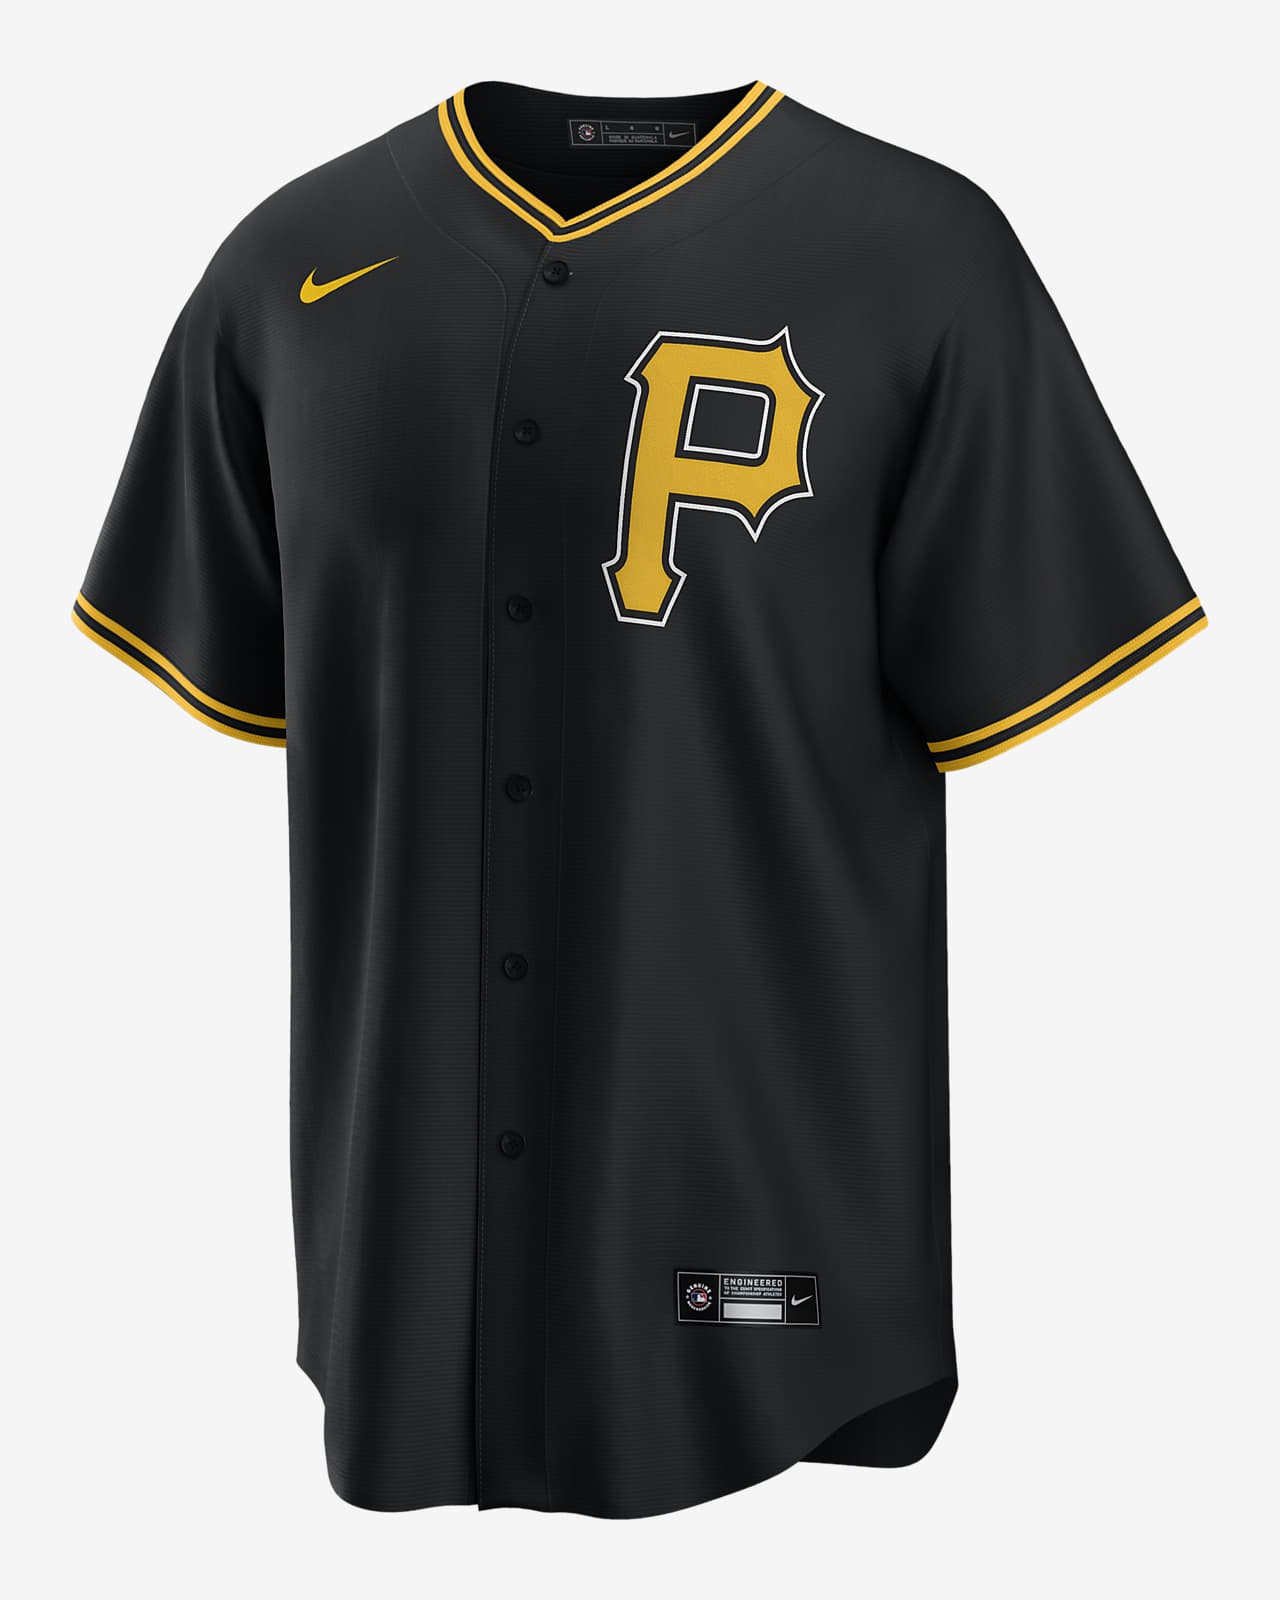 pirates baseball jersey